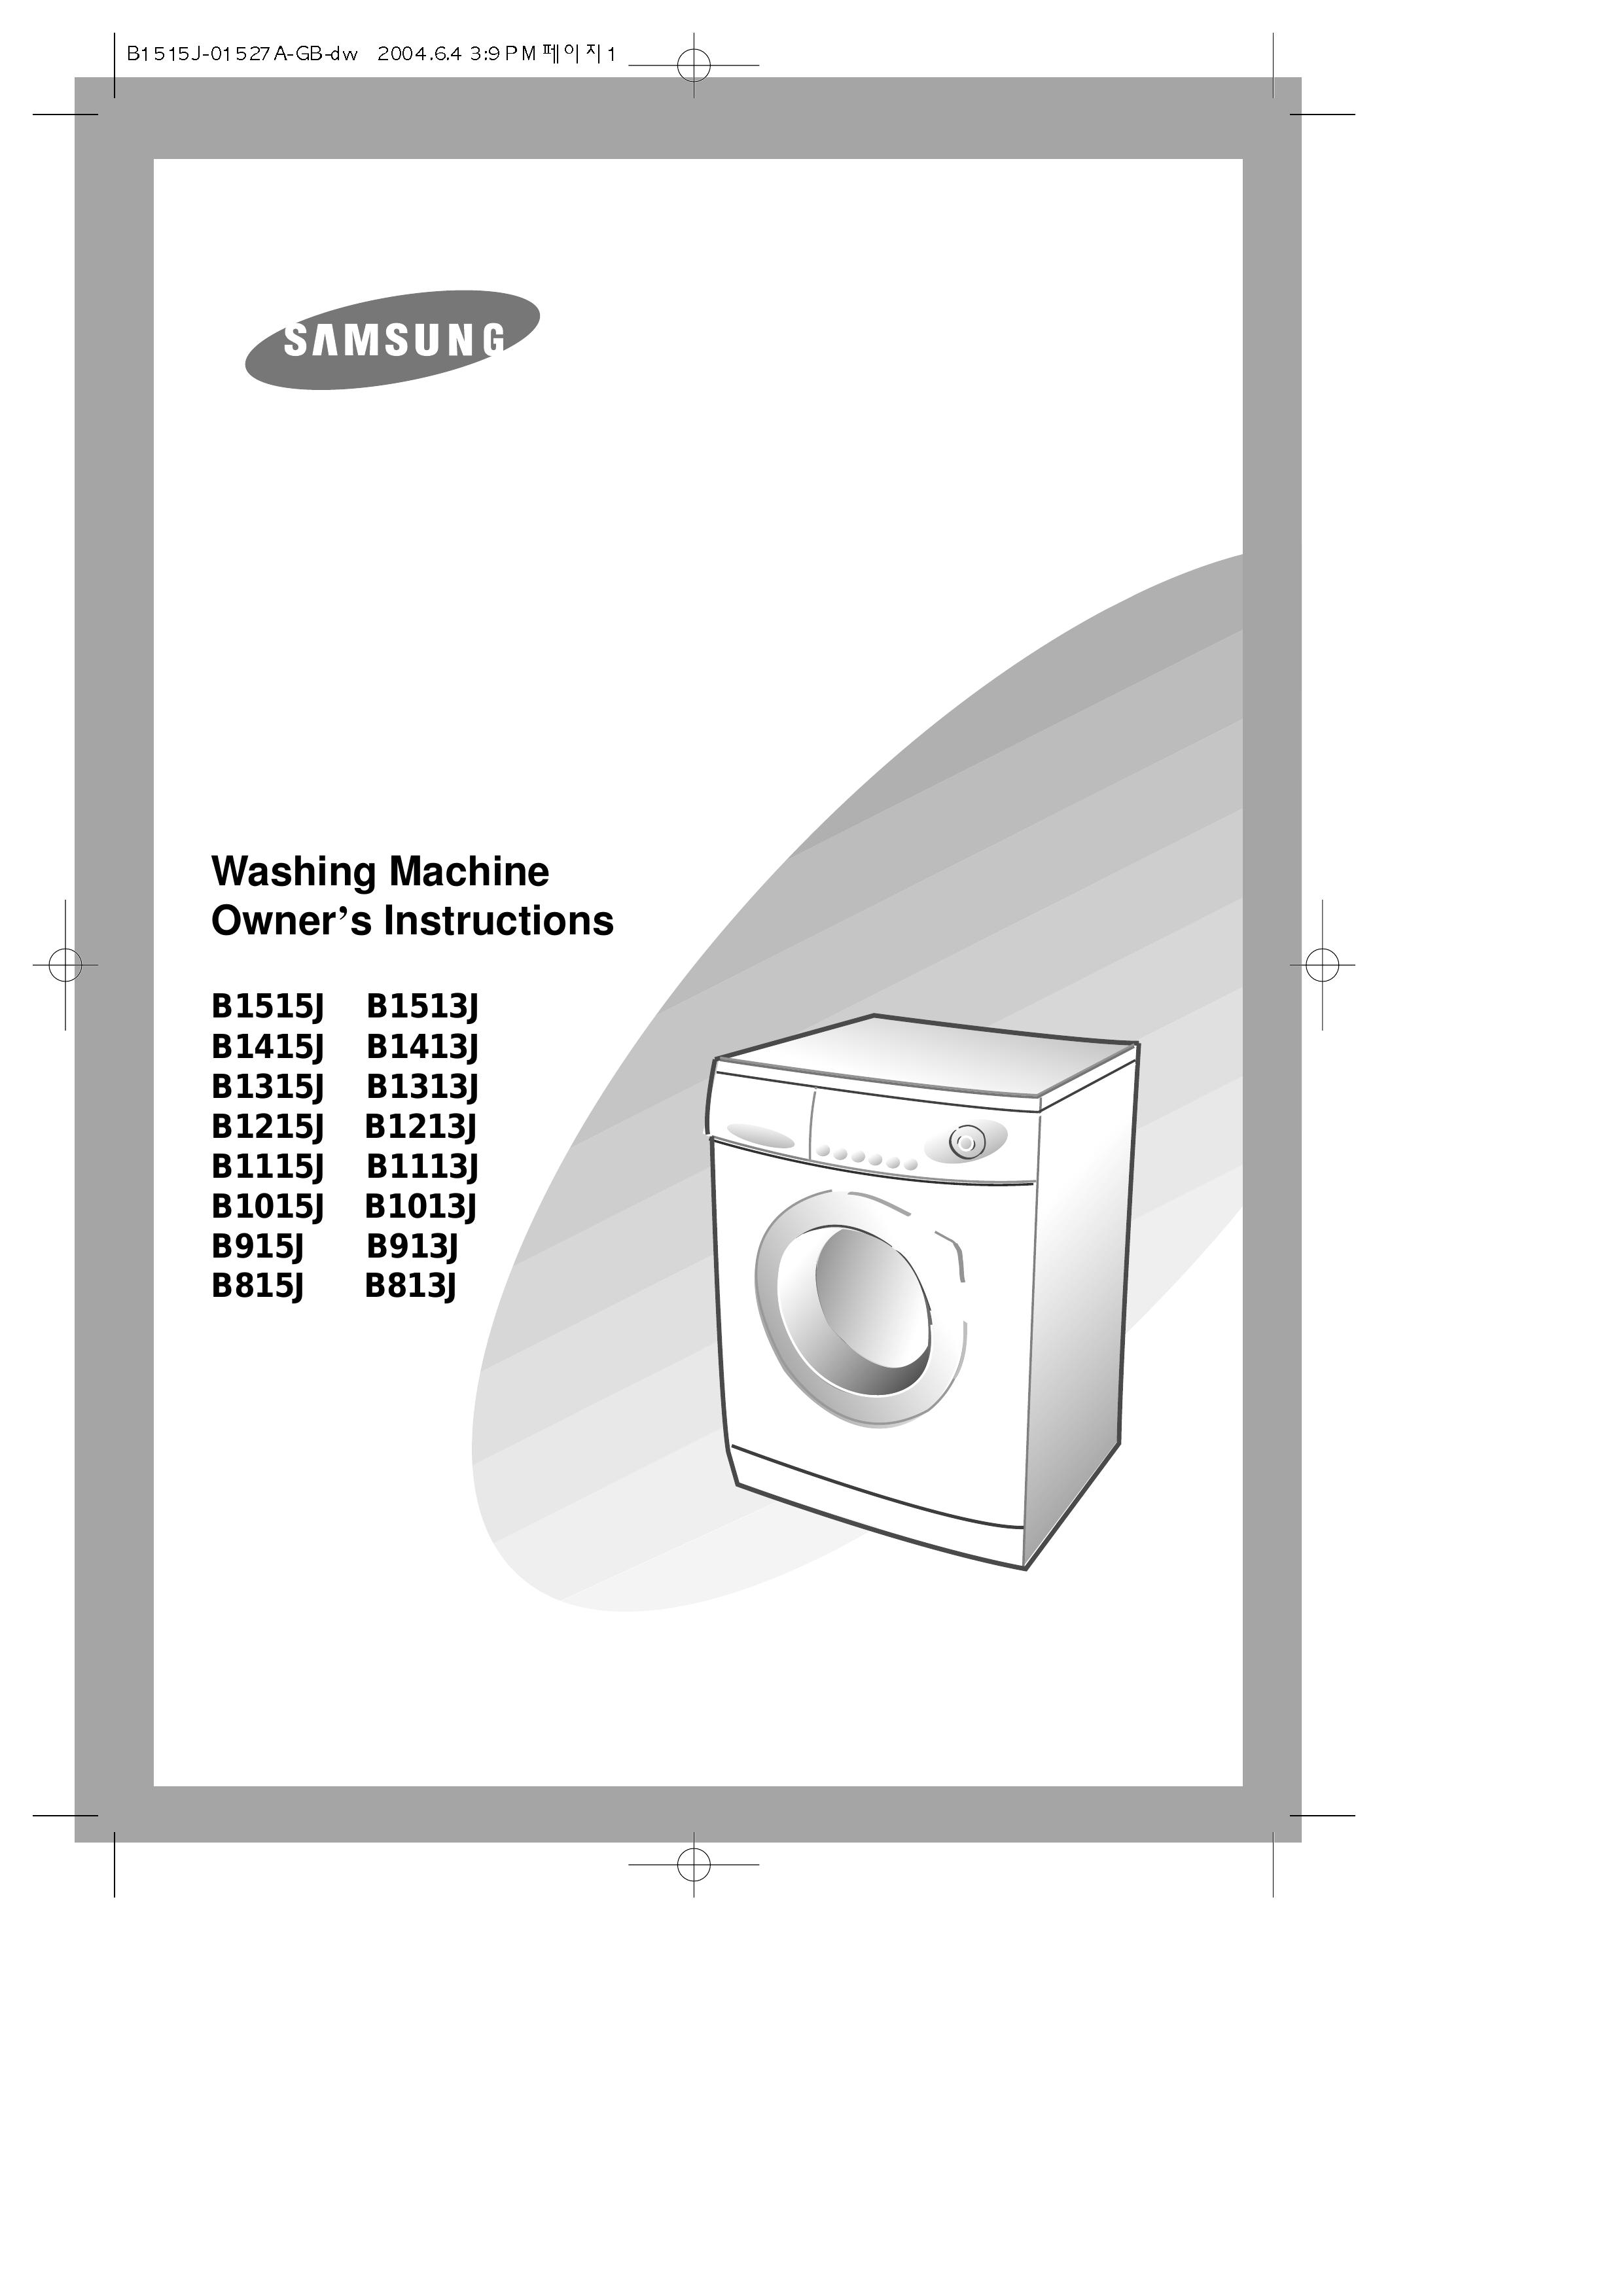 Samsung B1113J Washer User Manual